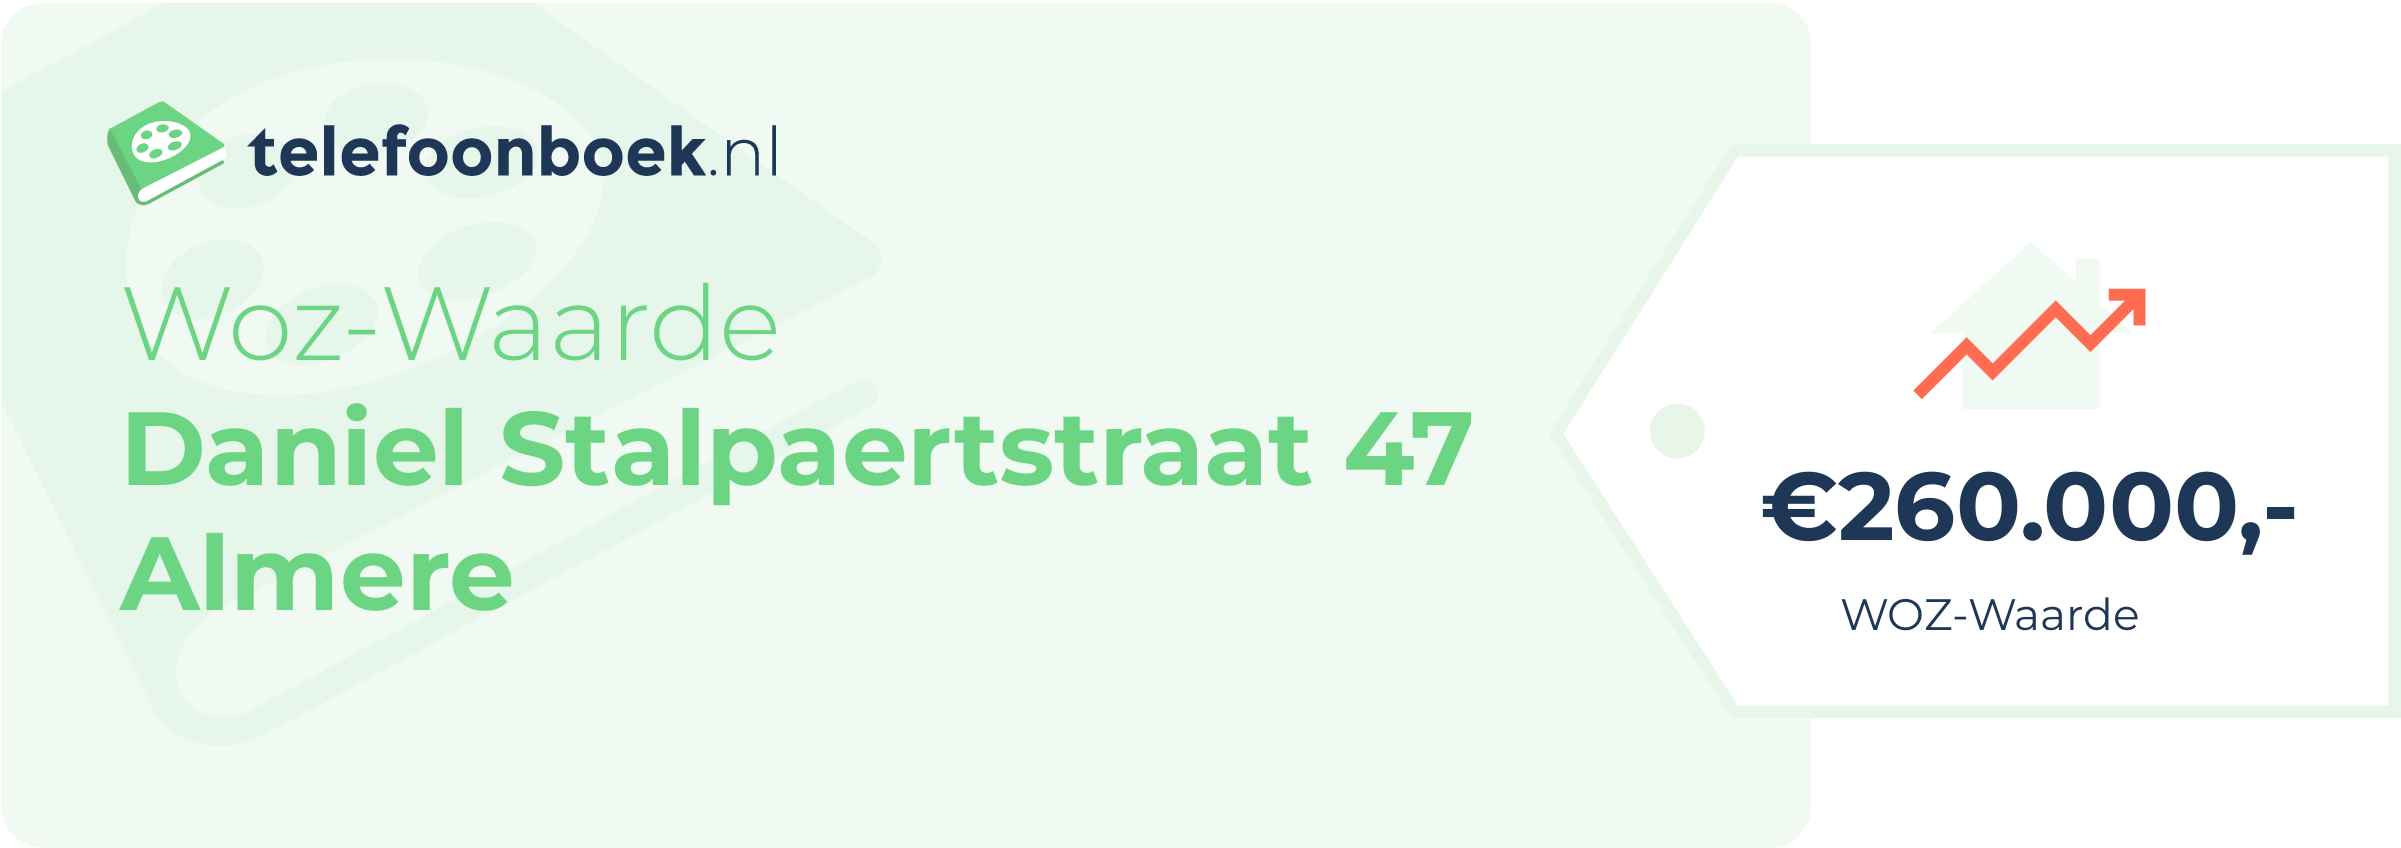 WOZ-waarde Daniel Stalpaertstraat 47 Almere